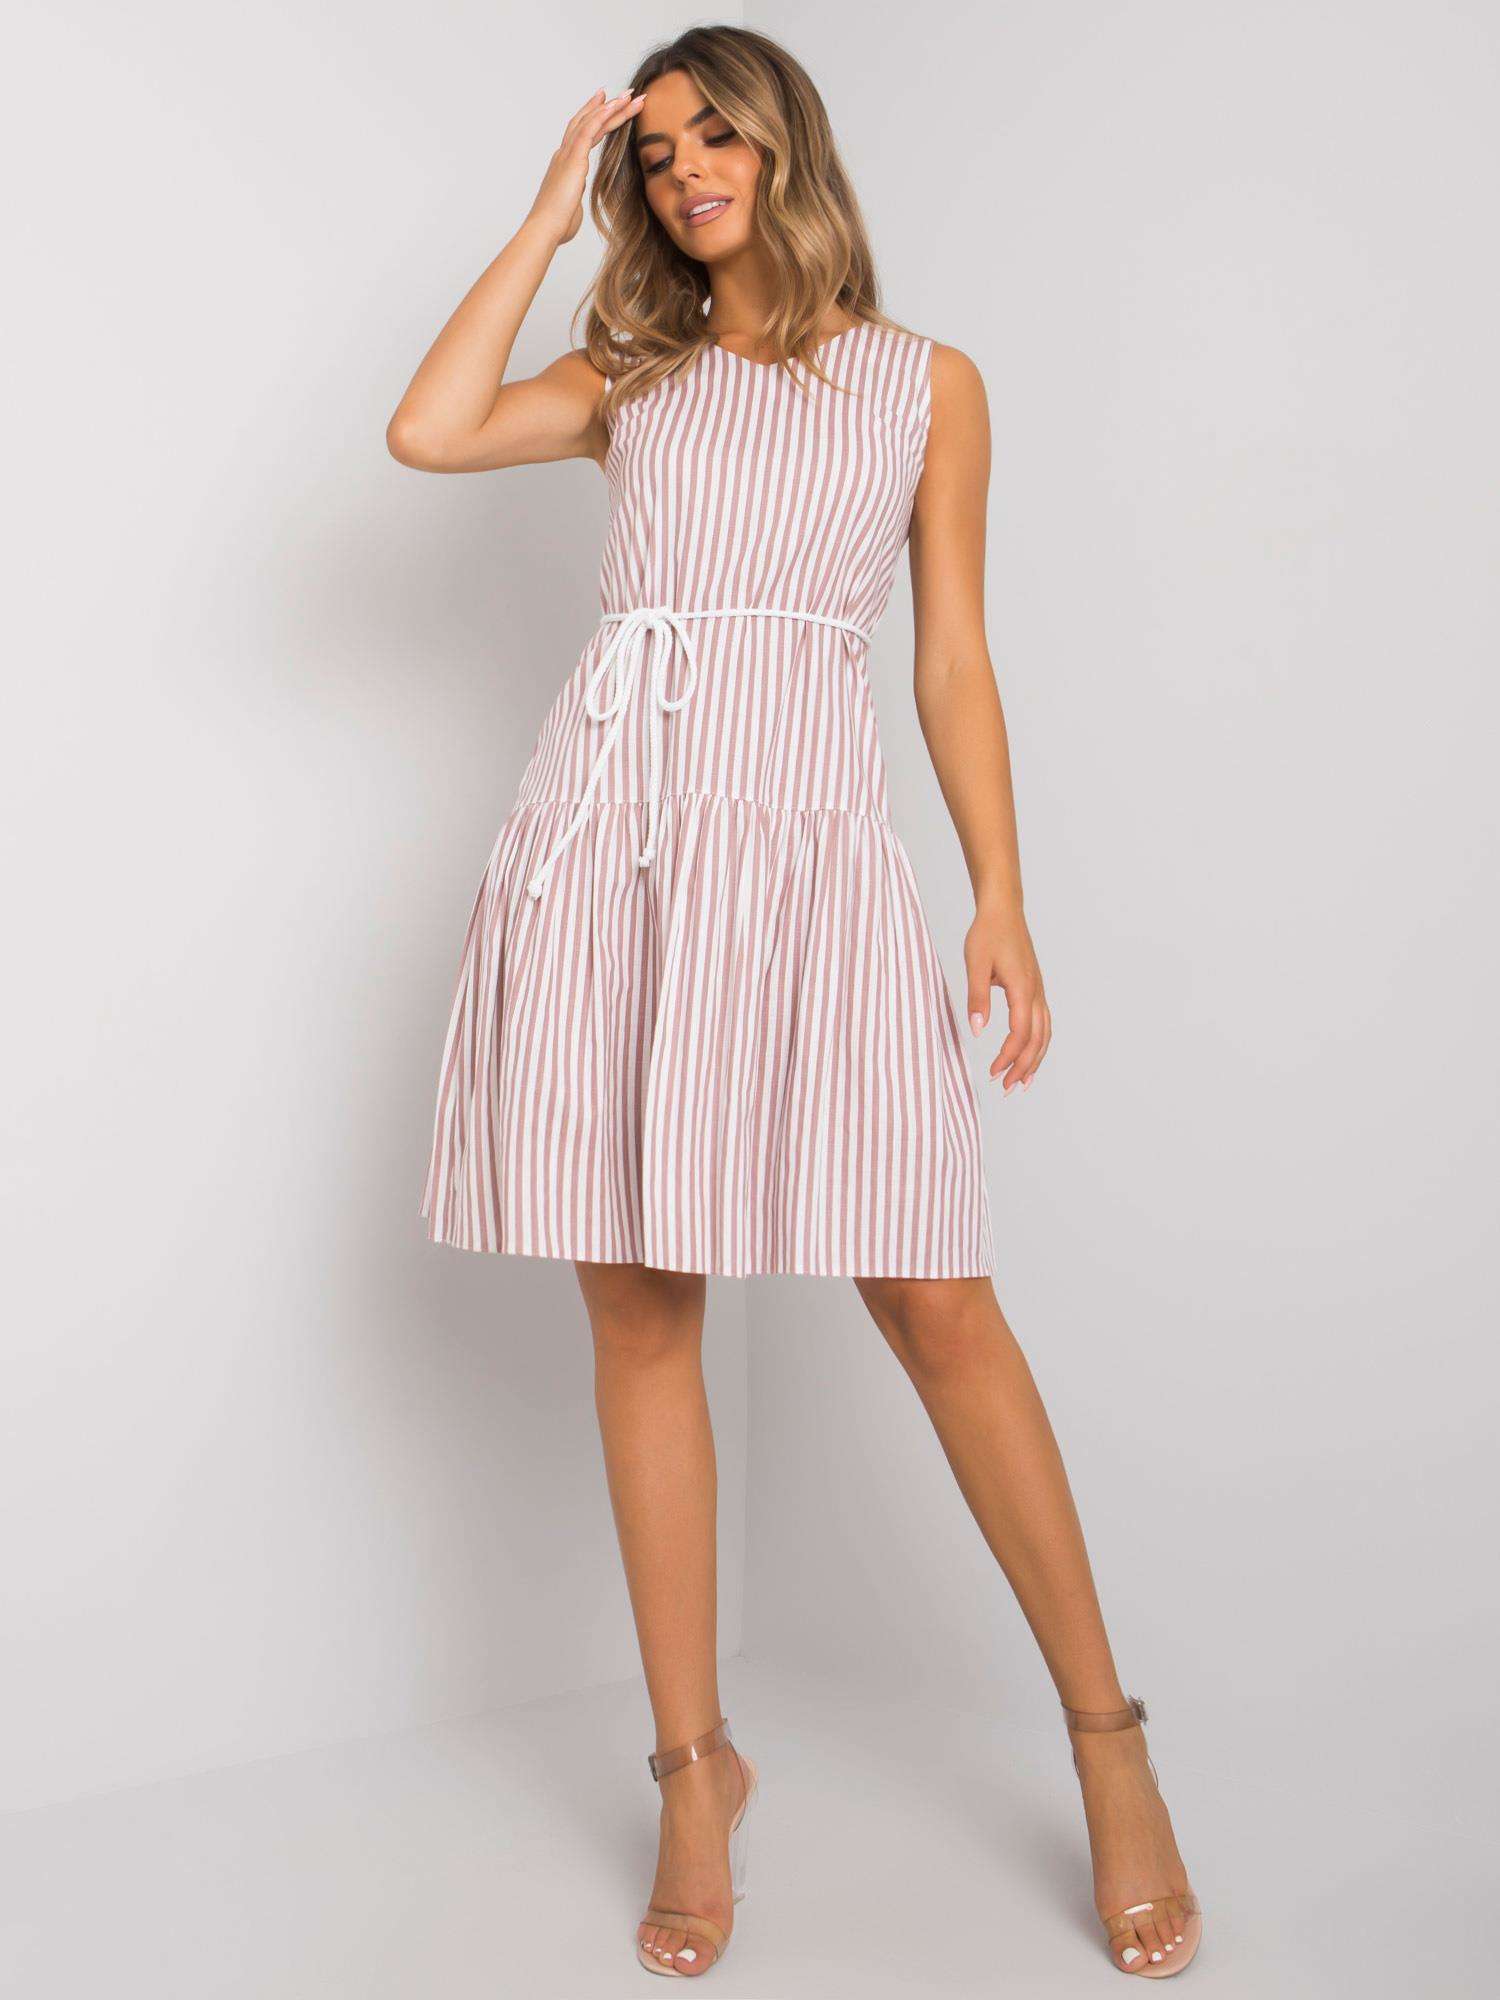 Růžovo-bílé pruhované šaty -LK-SK-508215-2.35P-white-pink Velikost: 36